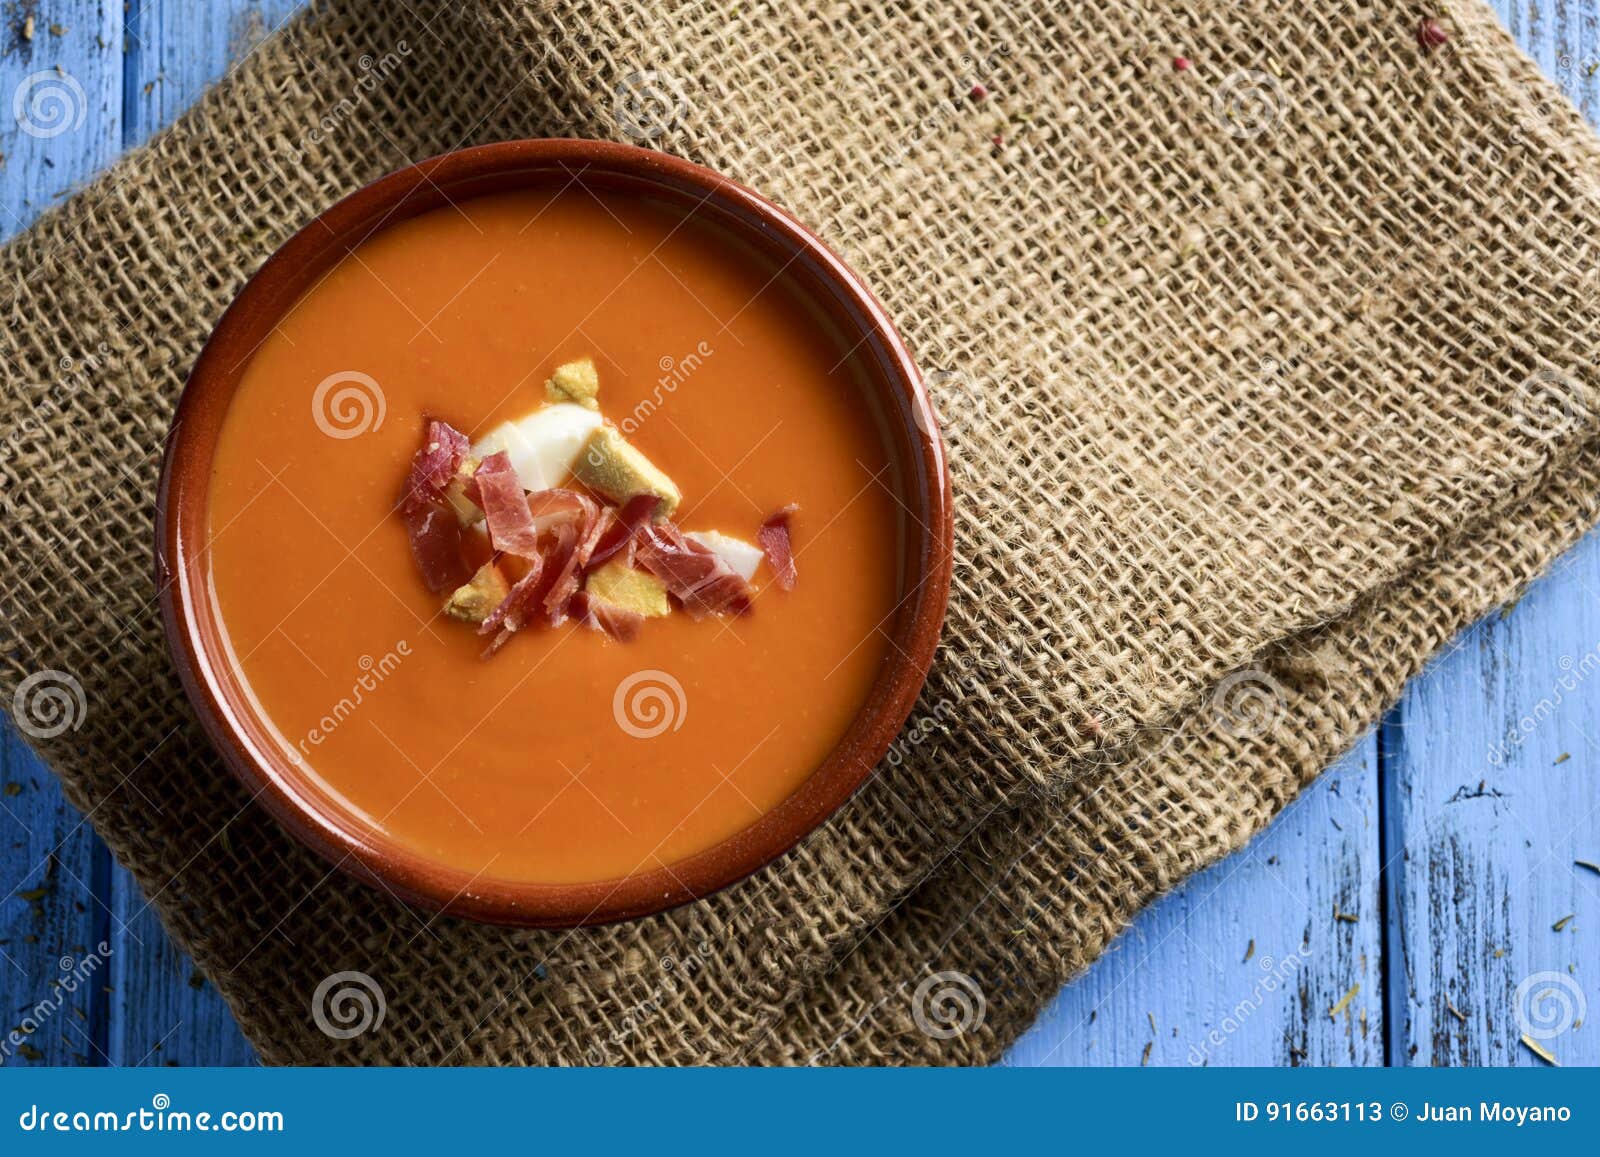 spanish porra antequerana, a cold tomato soup